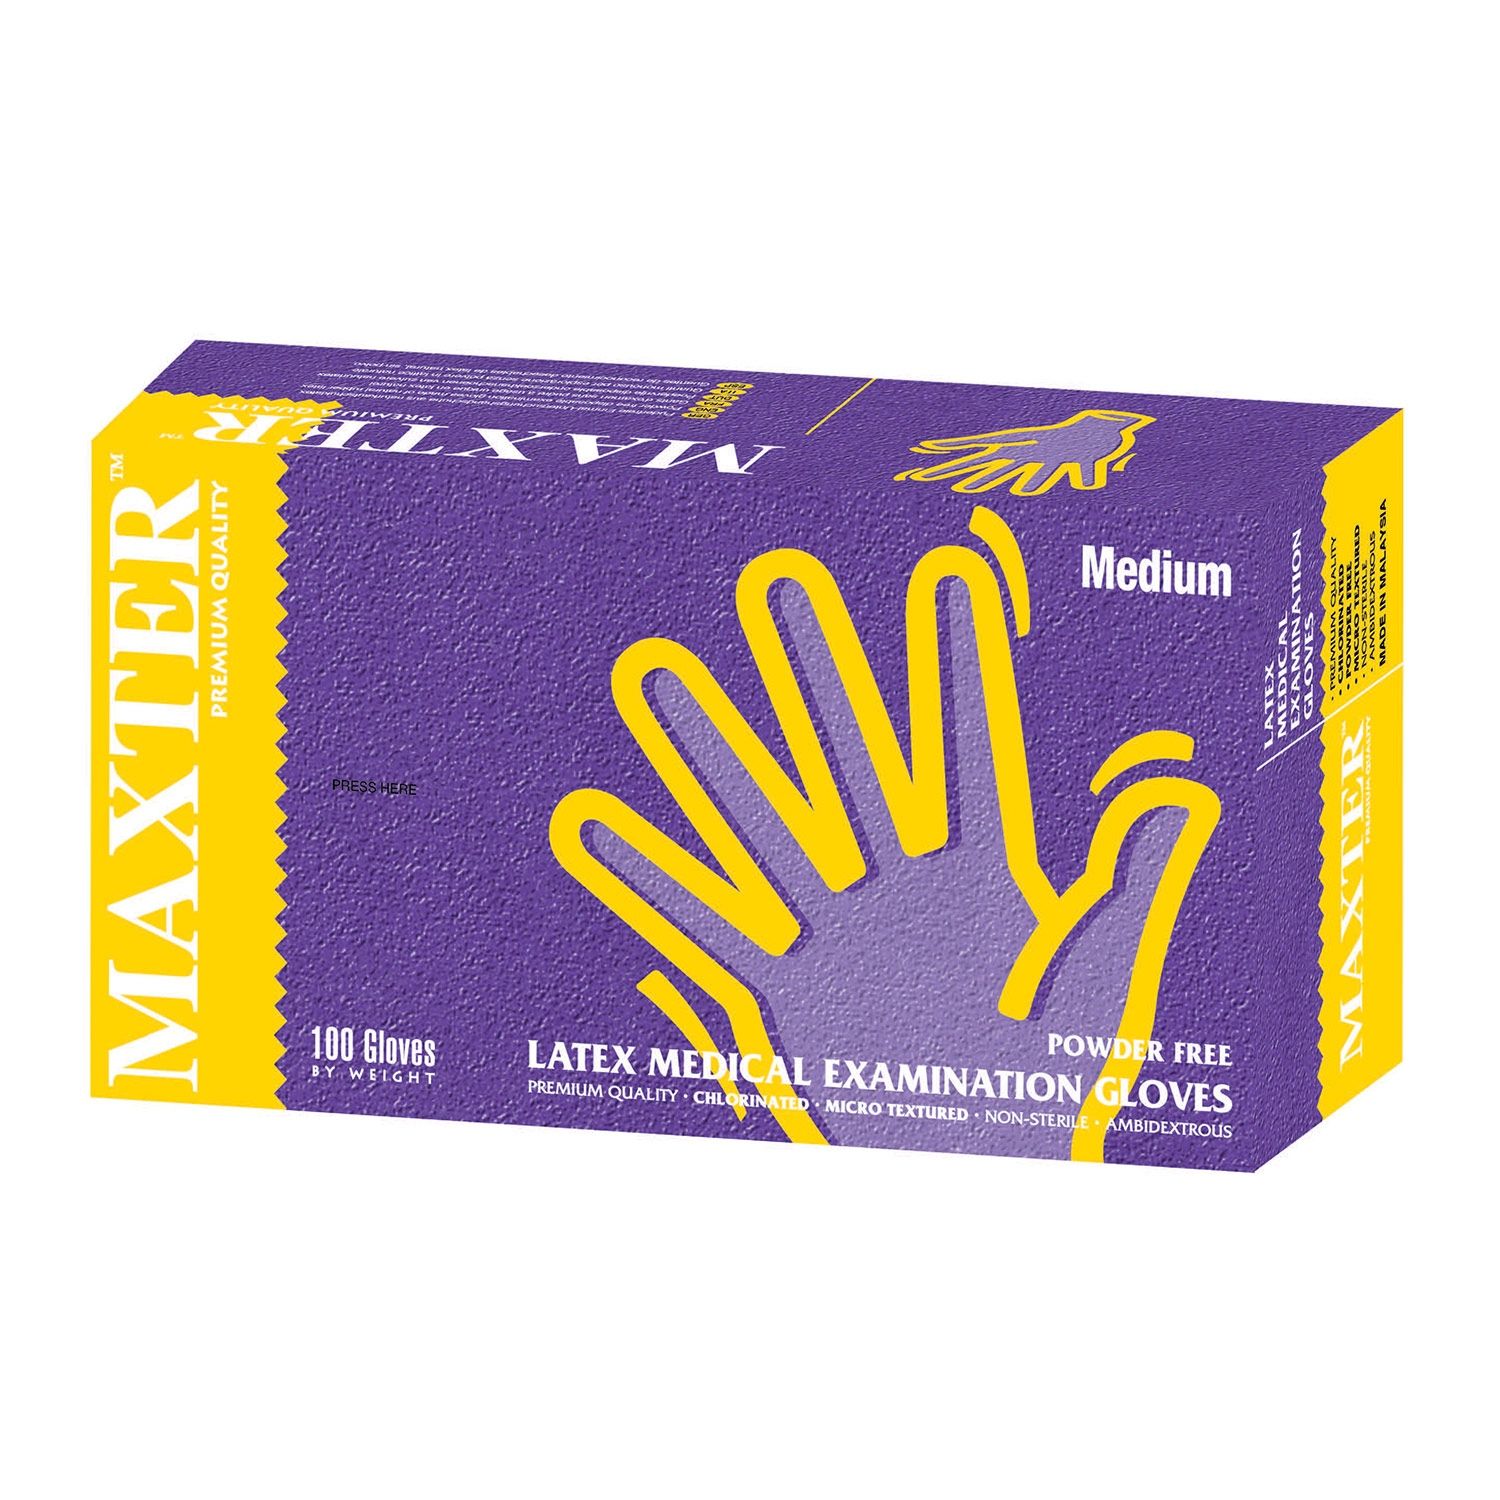 参比制剂,进口原料药,医药原料药 Maxter Powder Free Latex Gloves - XL (100)